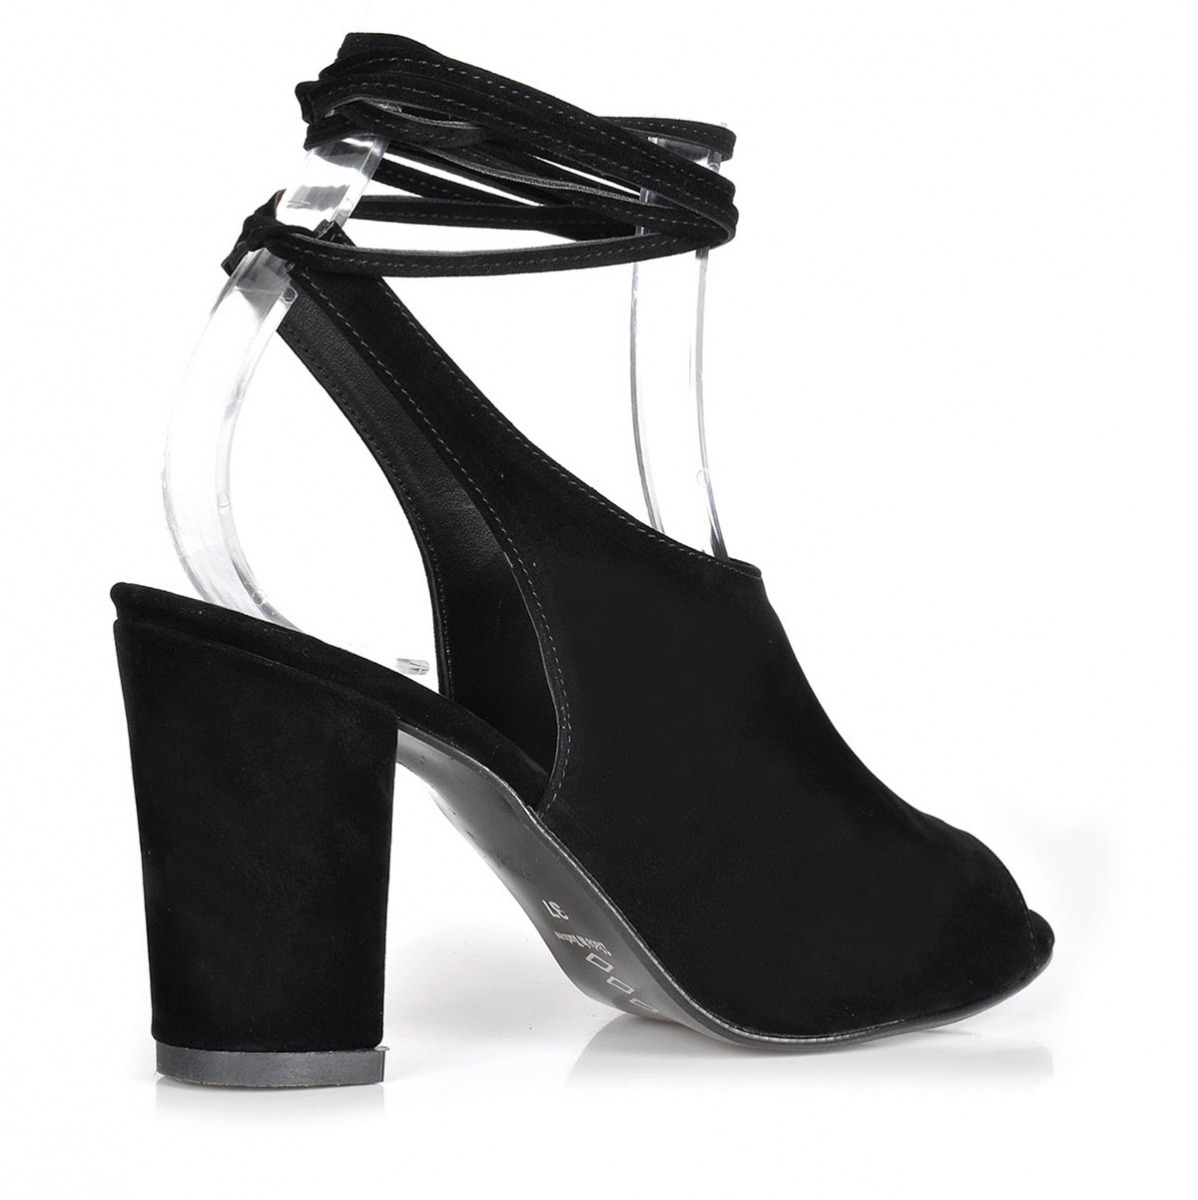 Flo Kadın  Siyah-Süet Klasik Topuklu Ayakkabı VZN-273Y. 3